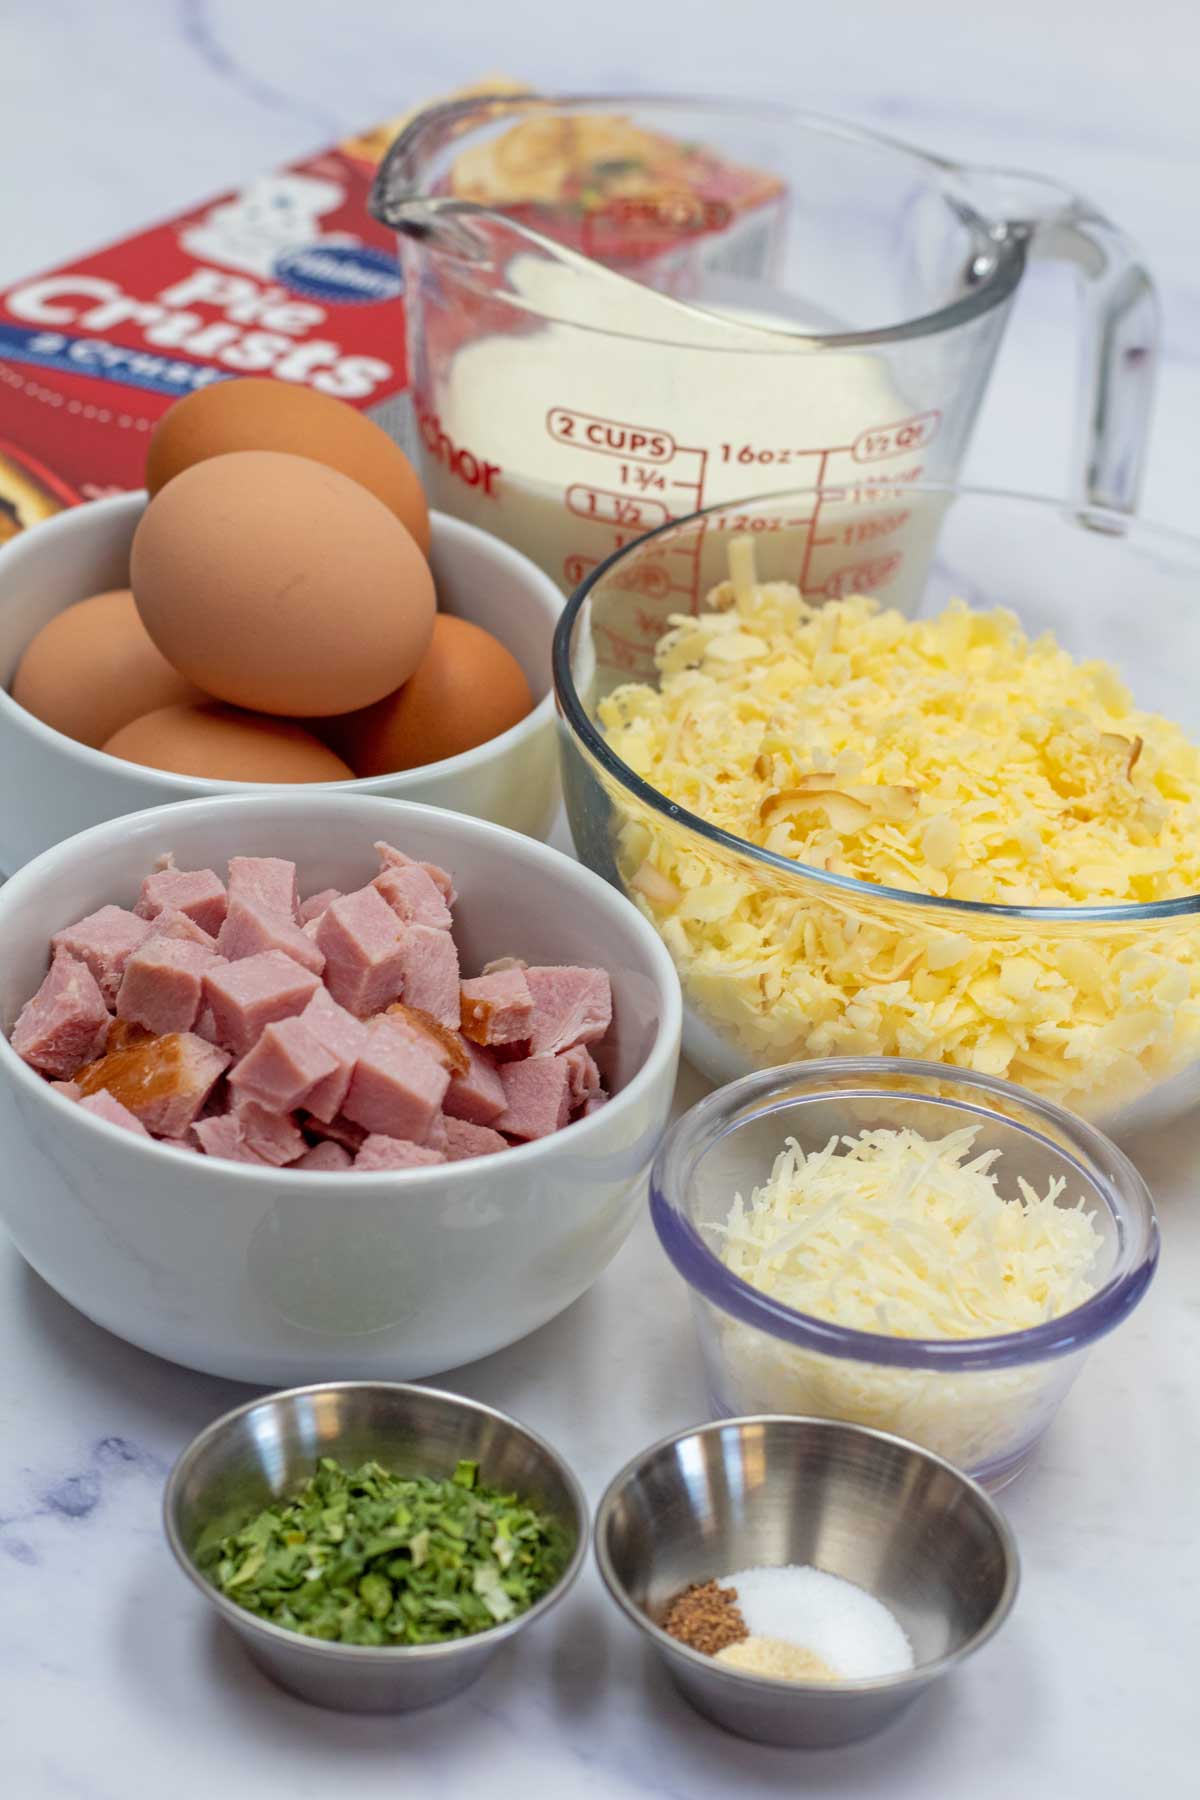 Hög bild som visar ingredienser för skinka och ostpaj.